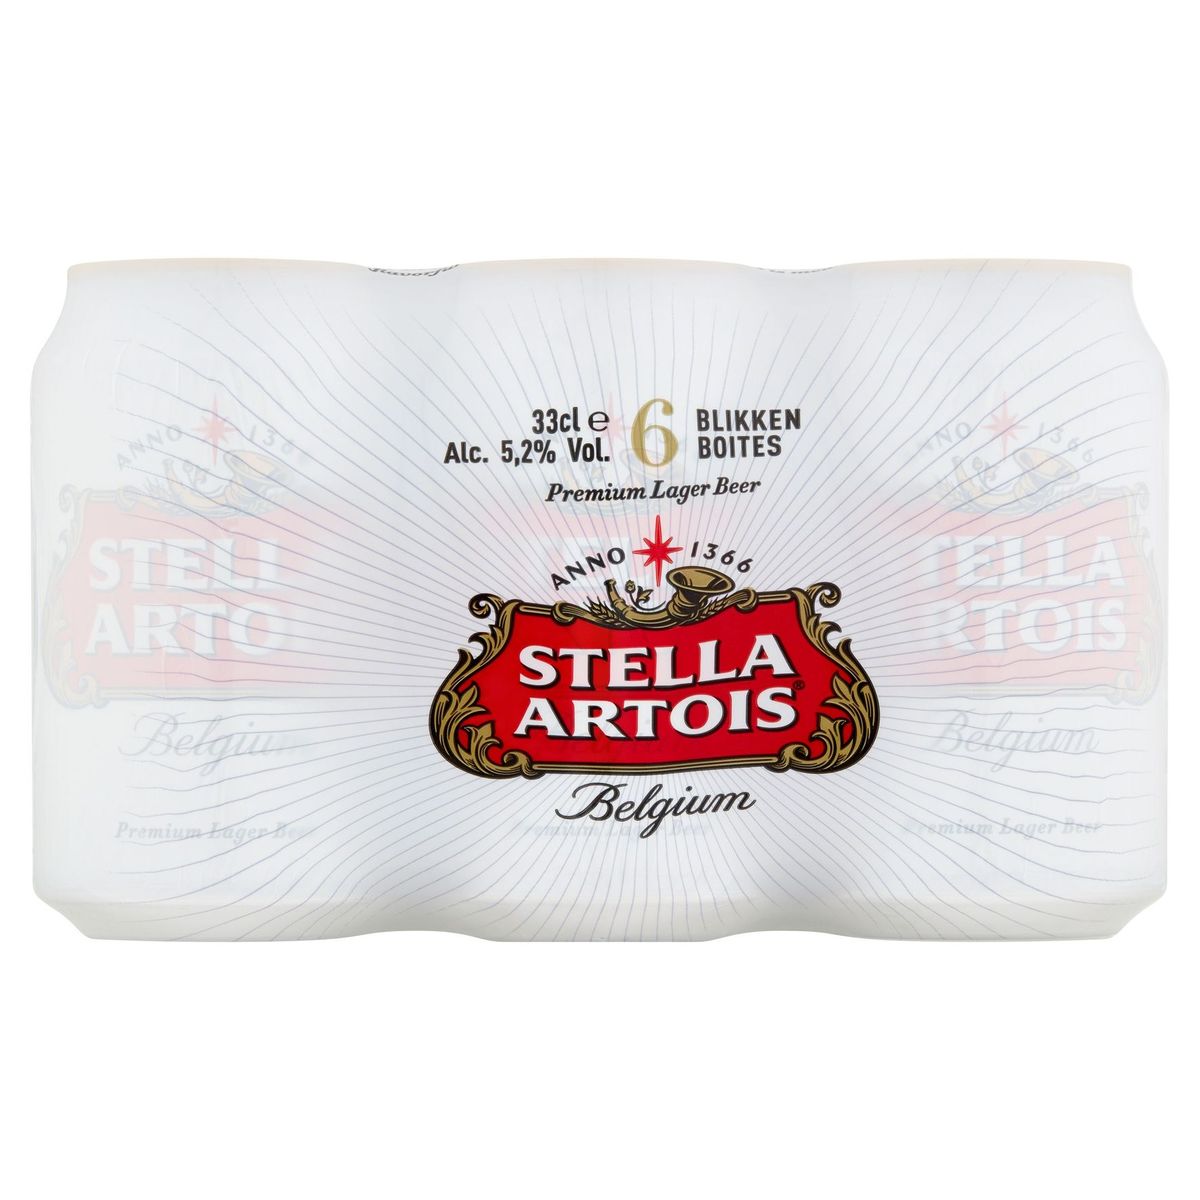 Stella Artois Belgium Premium Lager Beer Cannettes 6 x 33 cl